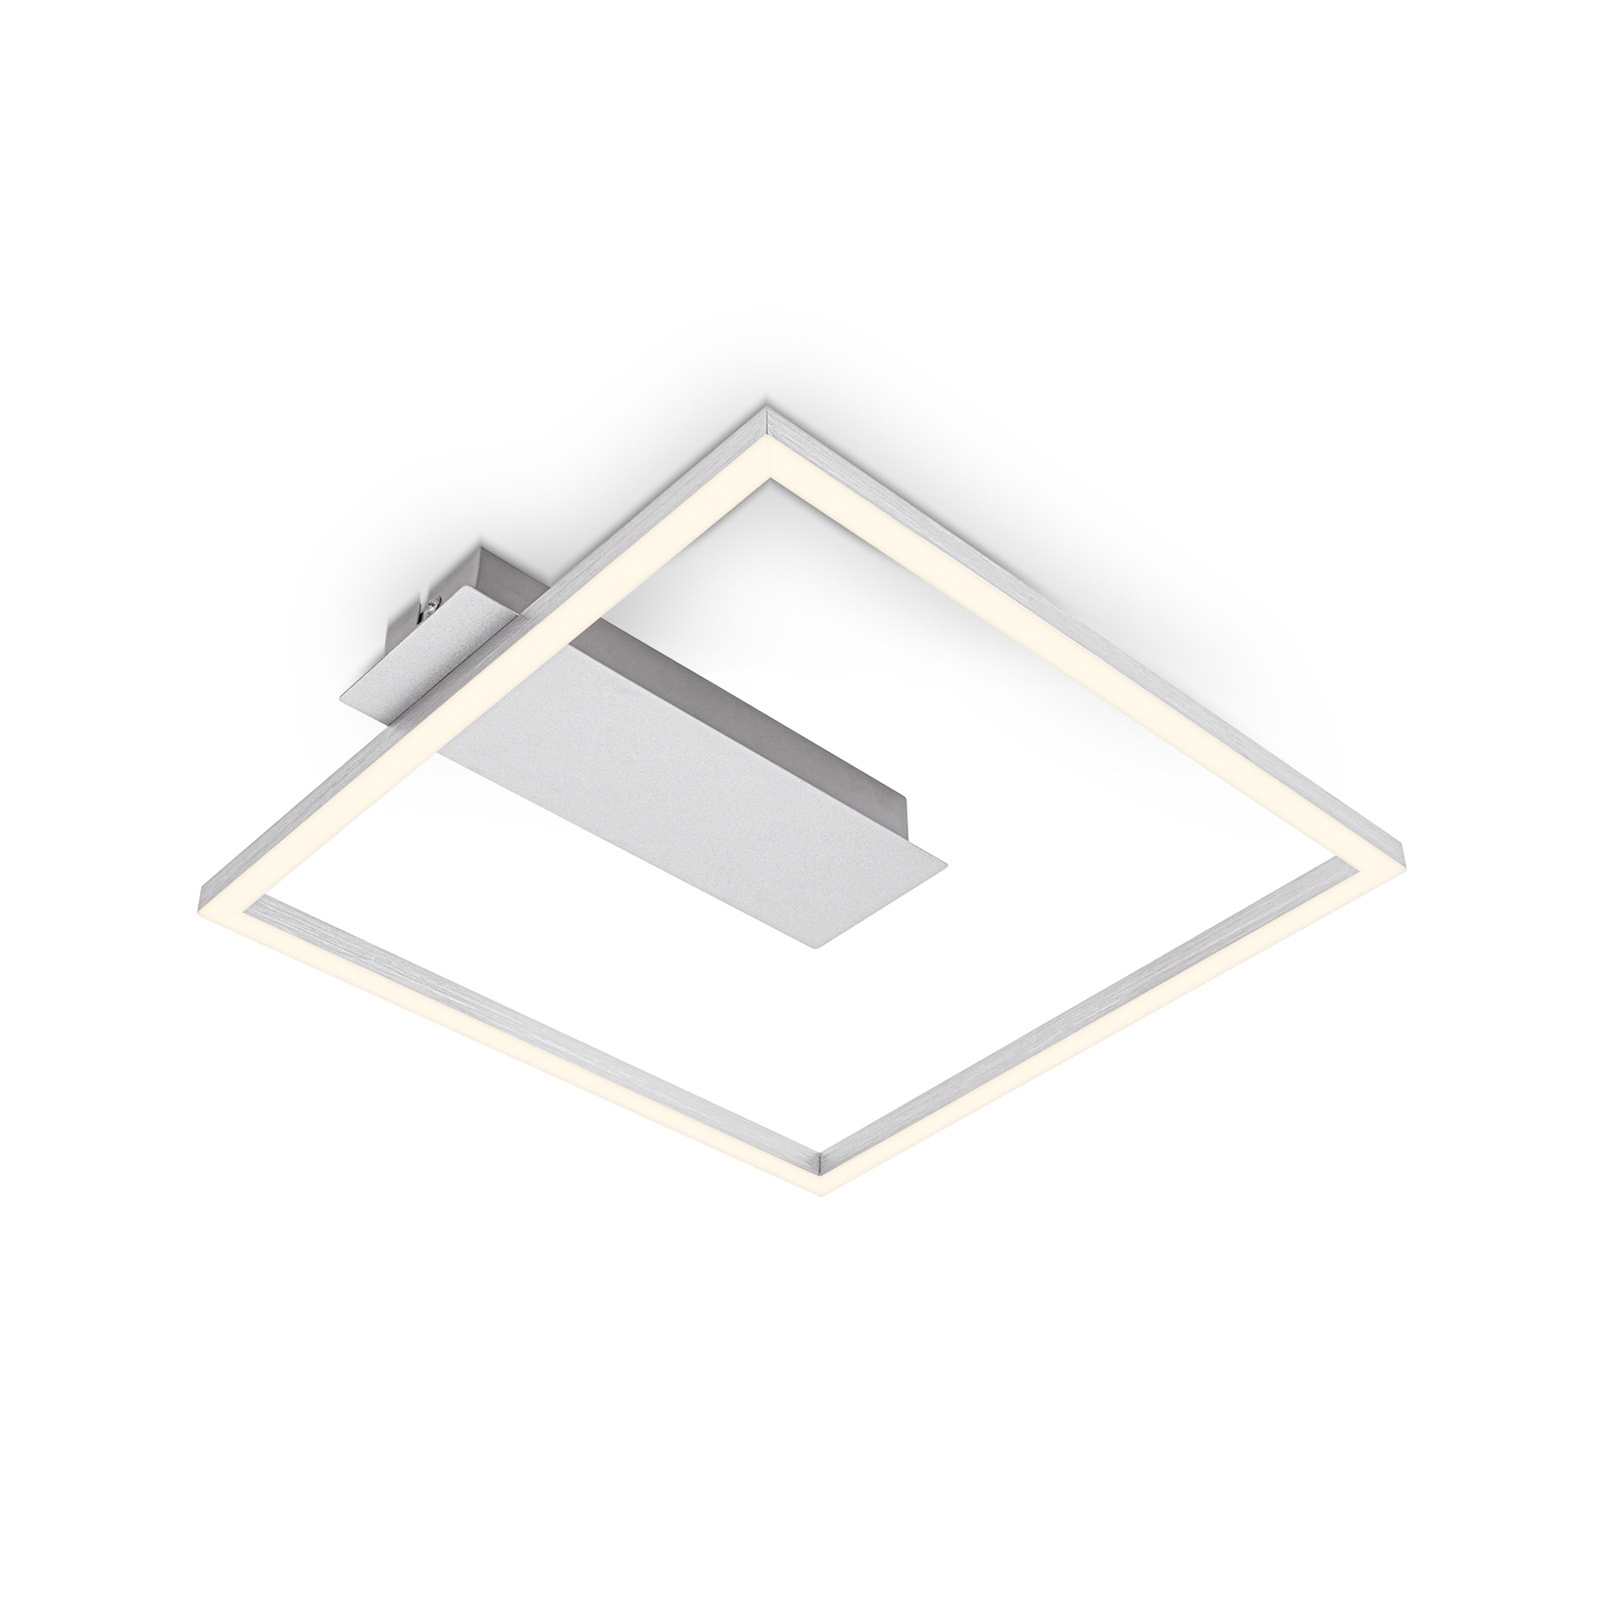 Lampa sufitowa LED 3771 w kształcie ramki, alu